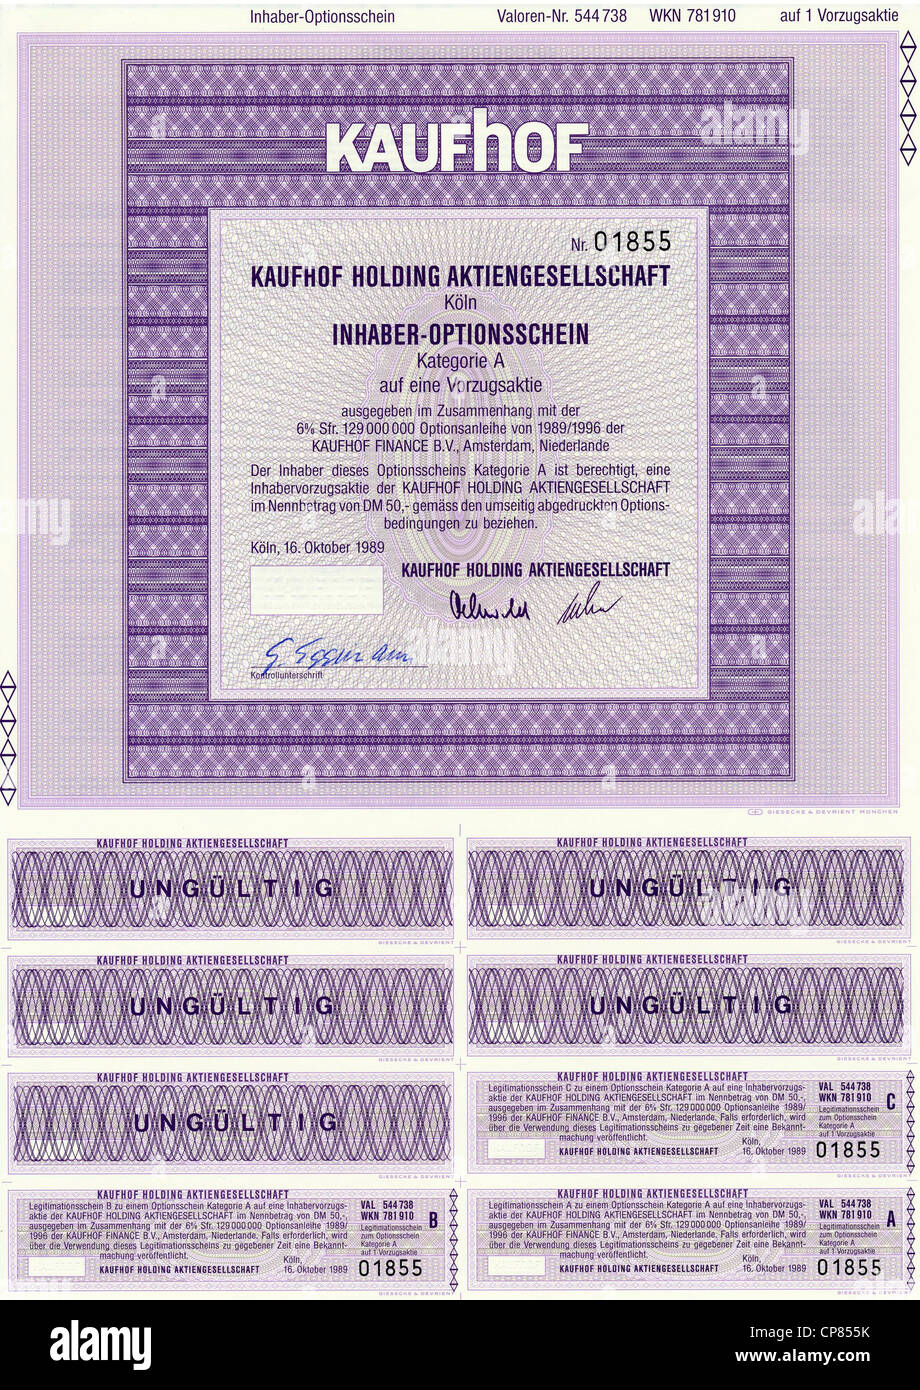 Historic Stock certificato, certificato di titoli al portatore, warrant, Germania, Historisches Wertpapier, Inhaber-Optionsschein UAE, Foto Stock